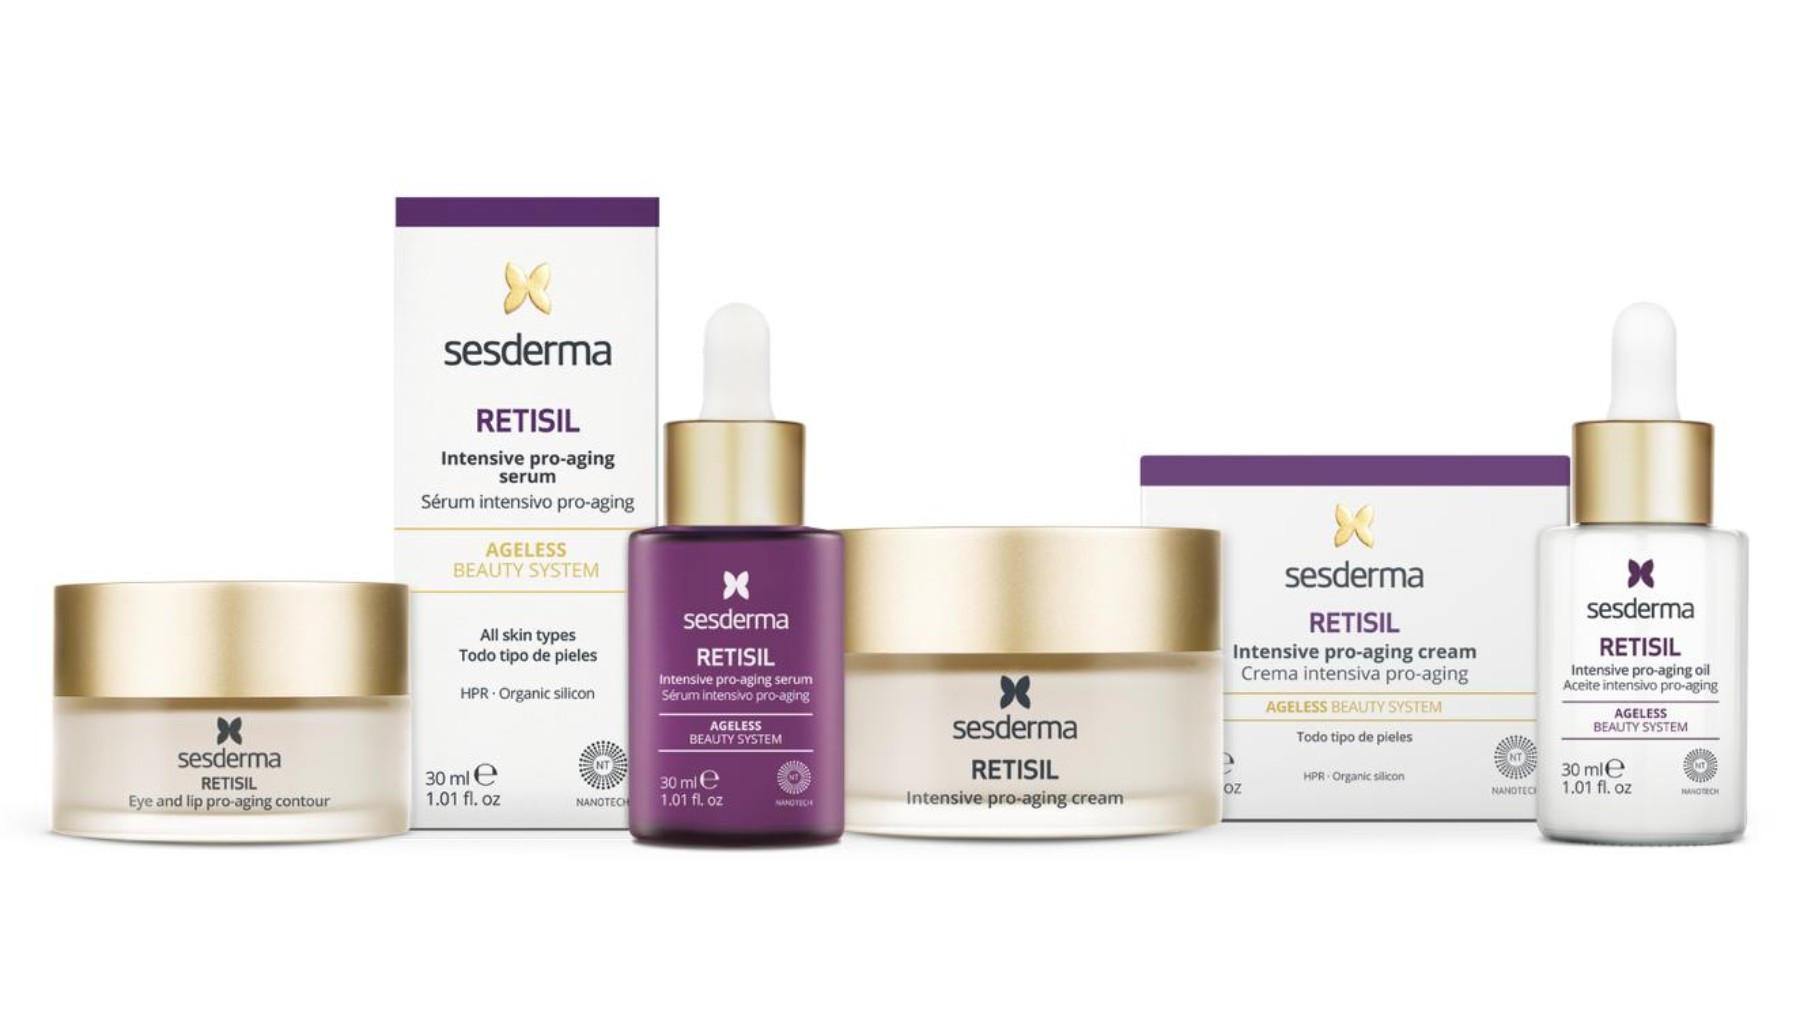 Bajo el concepto de belleza pro-aging, Sesderma lanzó el pasado mes de noviembre su nueva línea RETISIL.